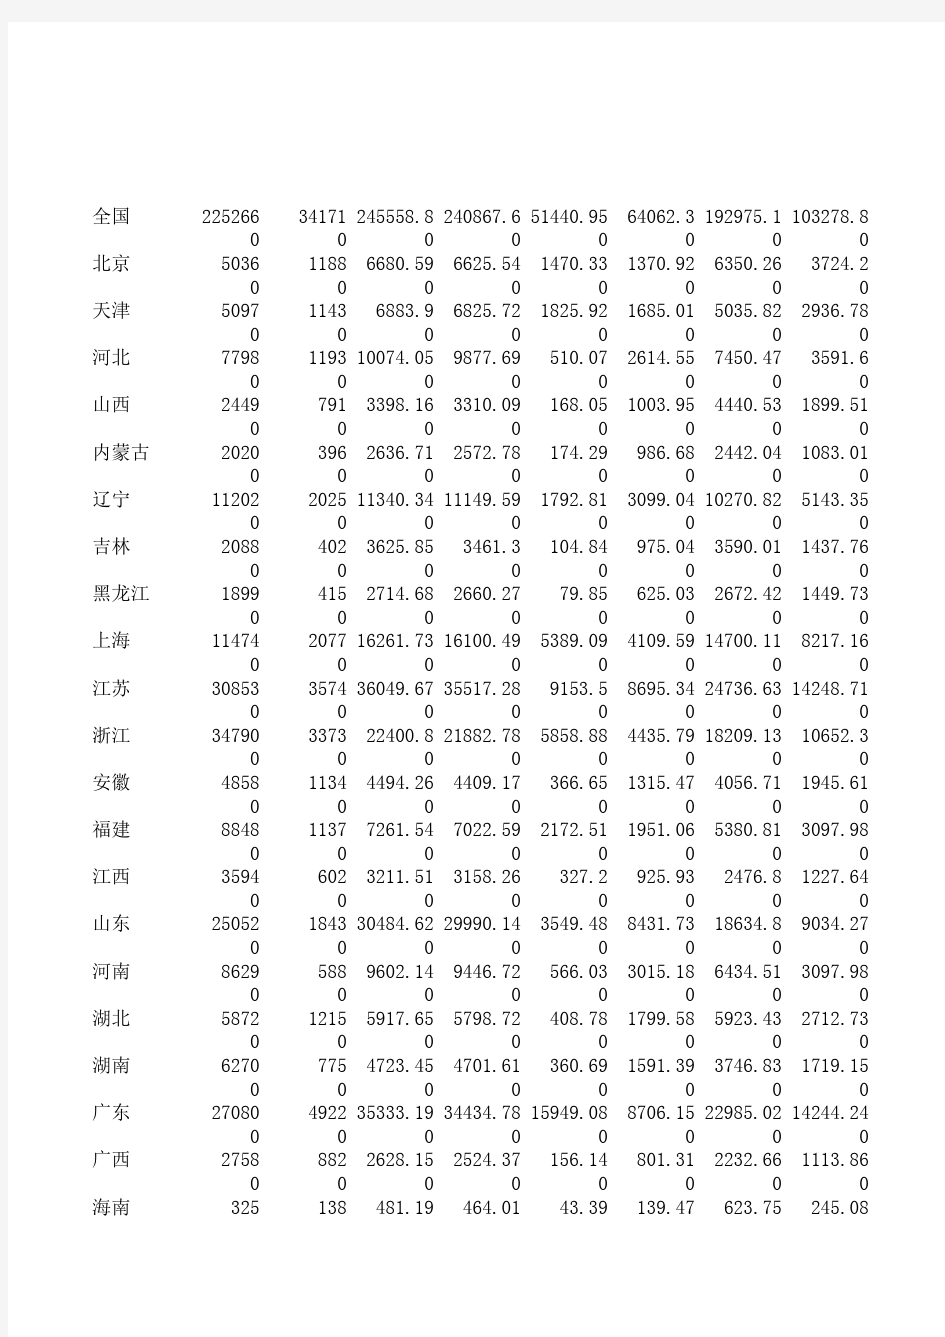 2007年 中国工业经济统计年鉴